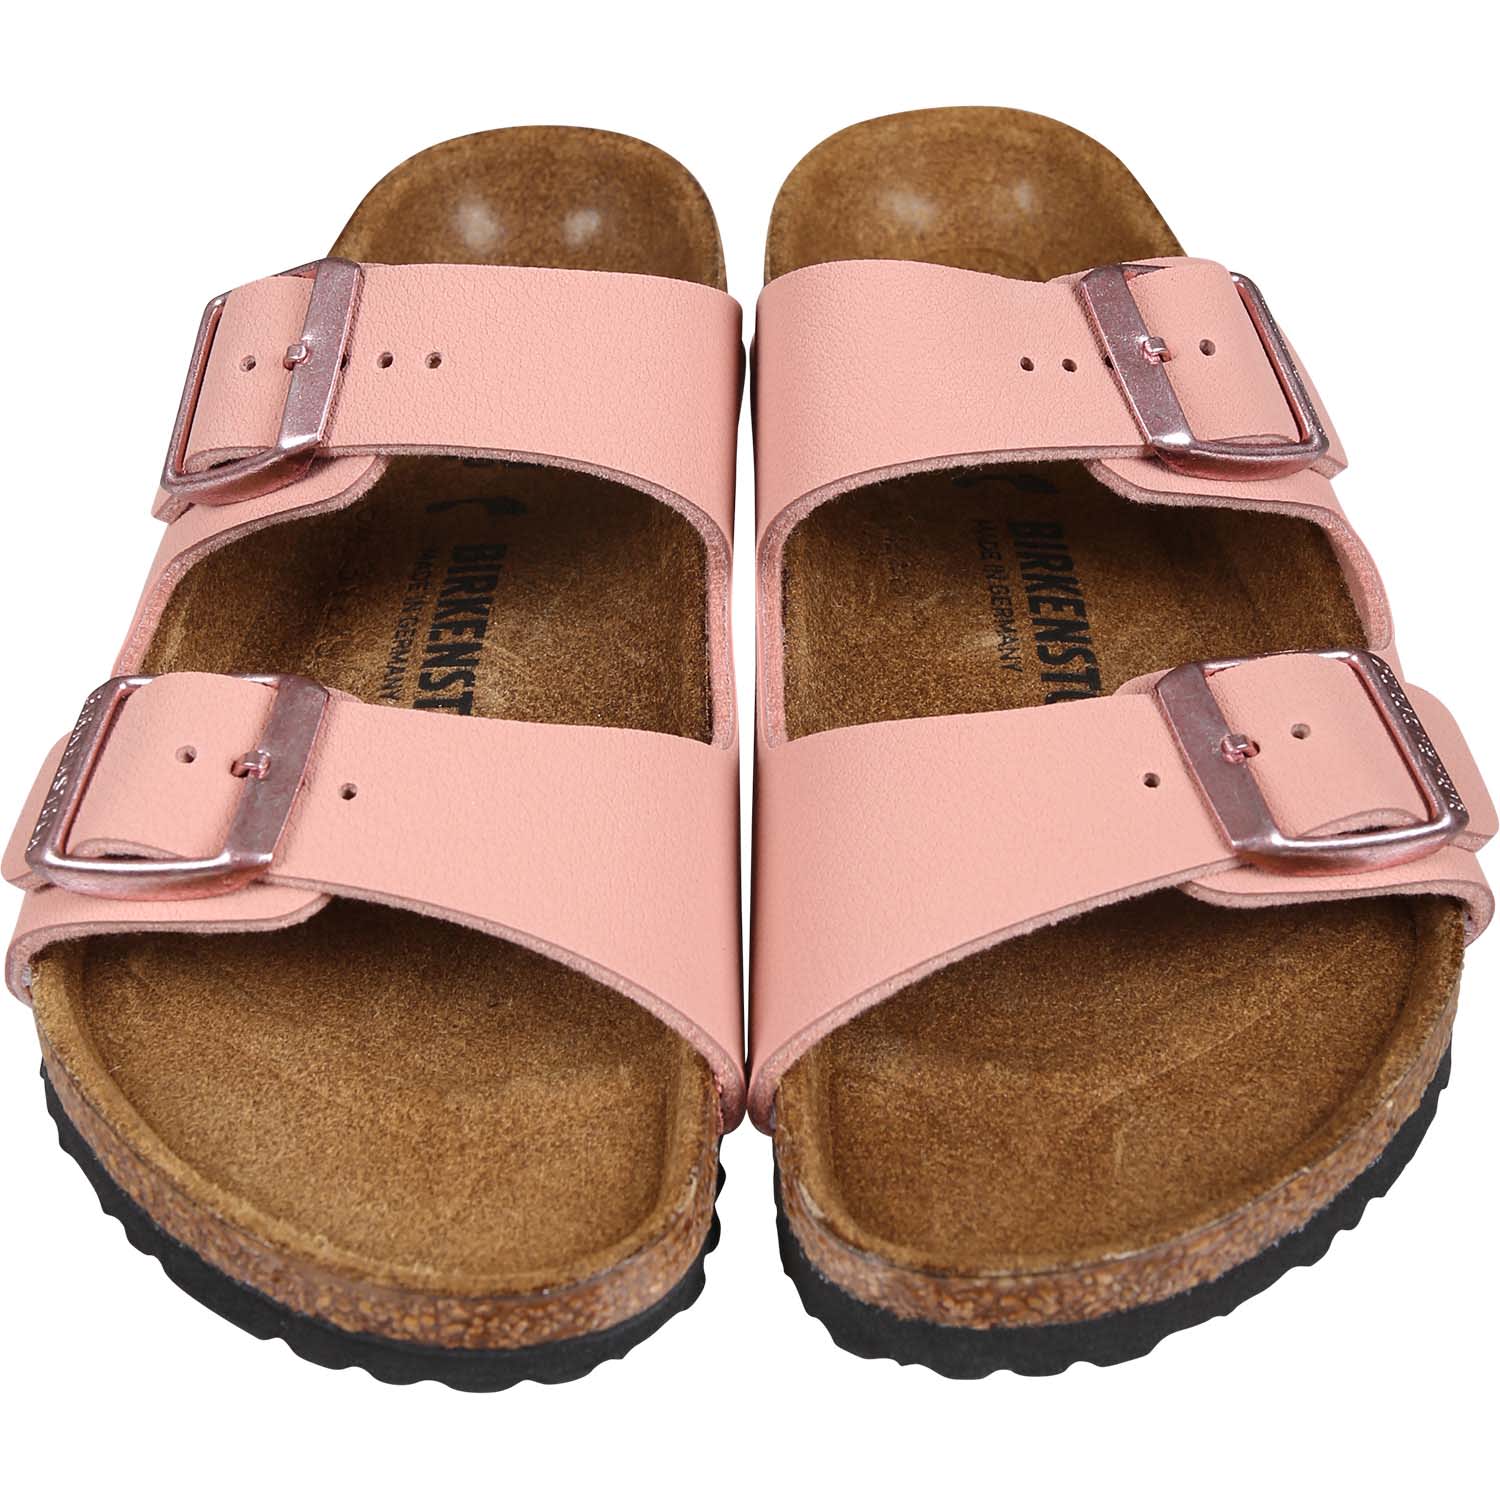 Shop Birkenstock Pink Arizona Bs Slippers For Girl